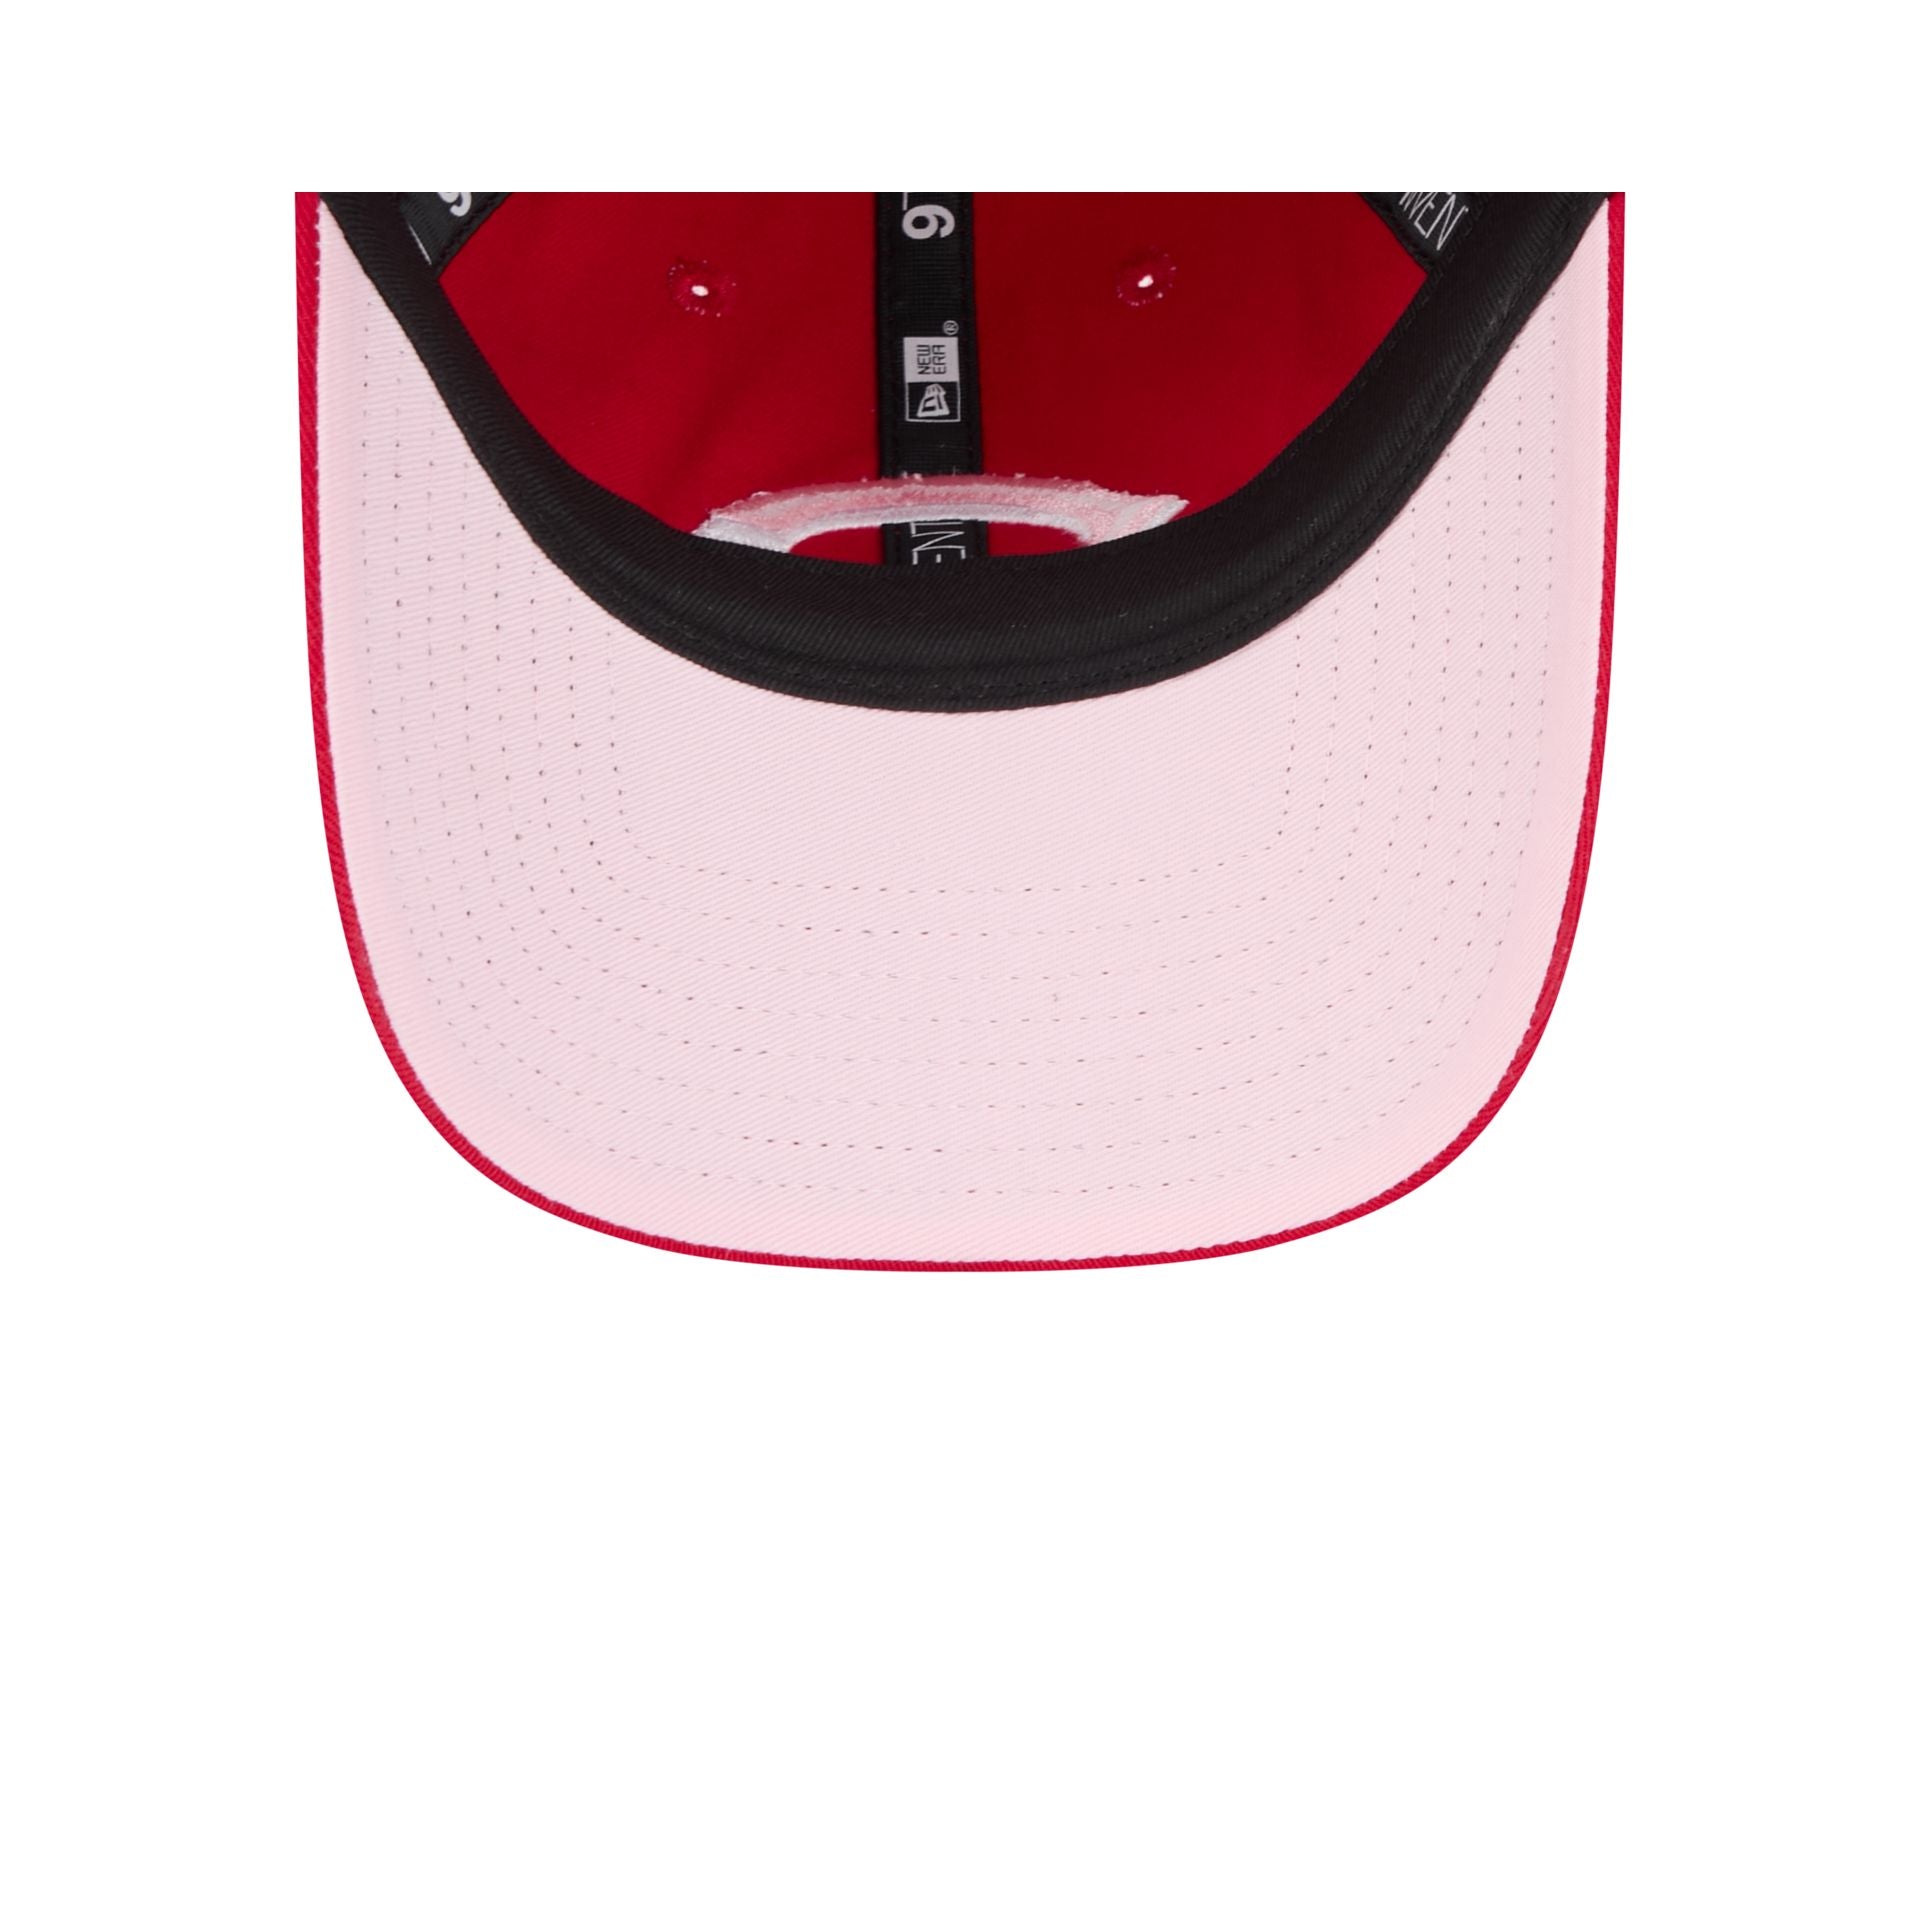 Cincinnati Reds Mother's Day 2024 Women's 9TWENTY Adjustable Hat